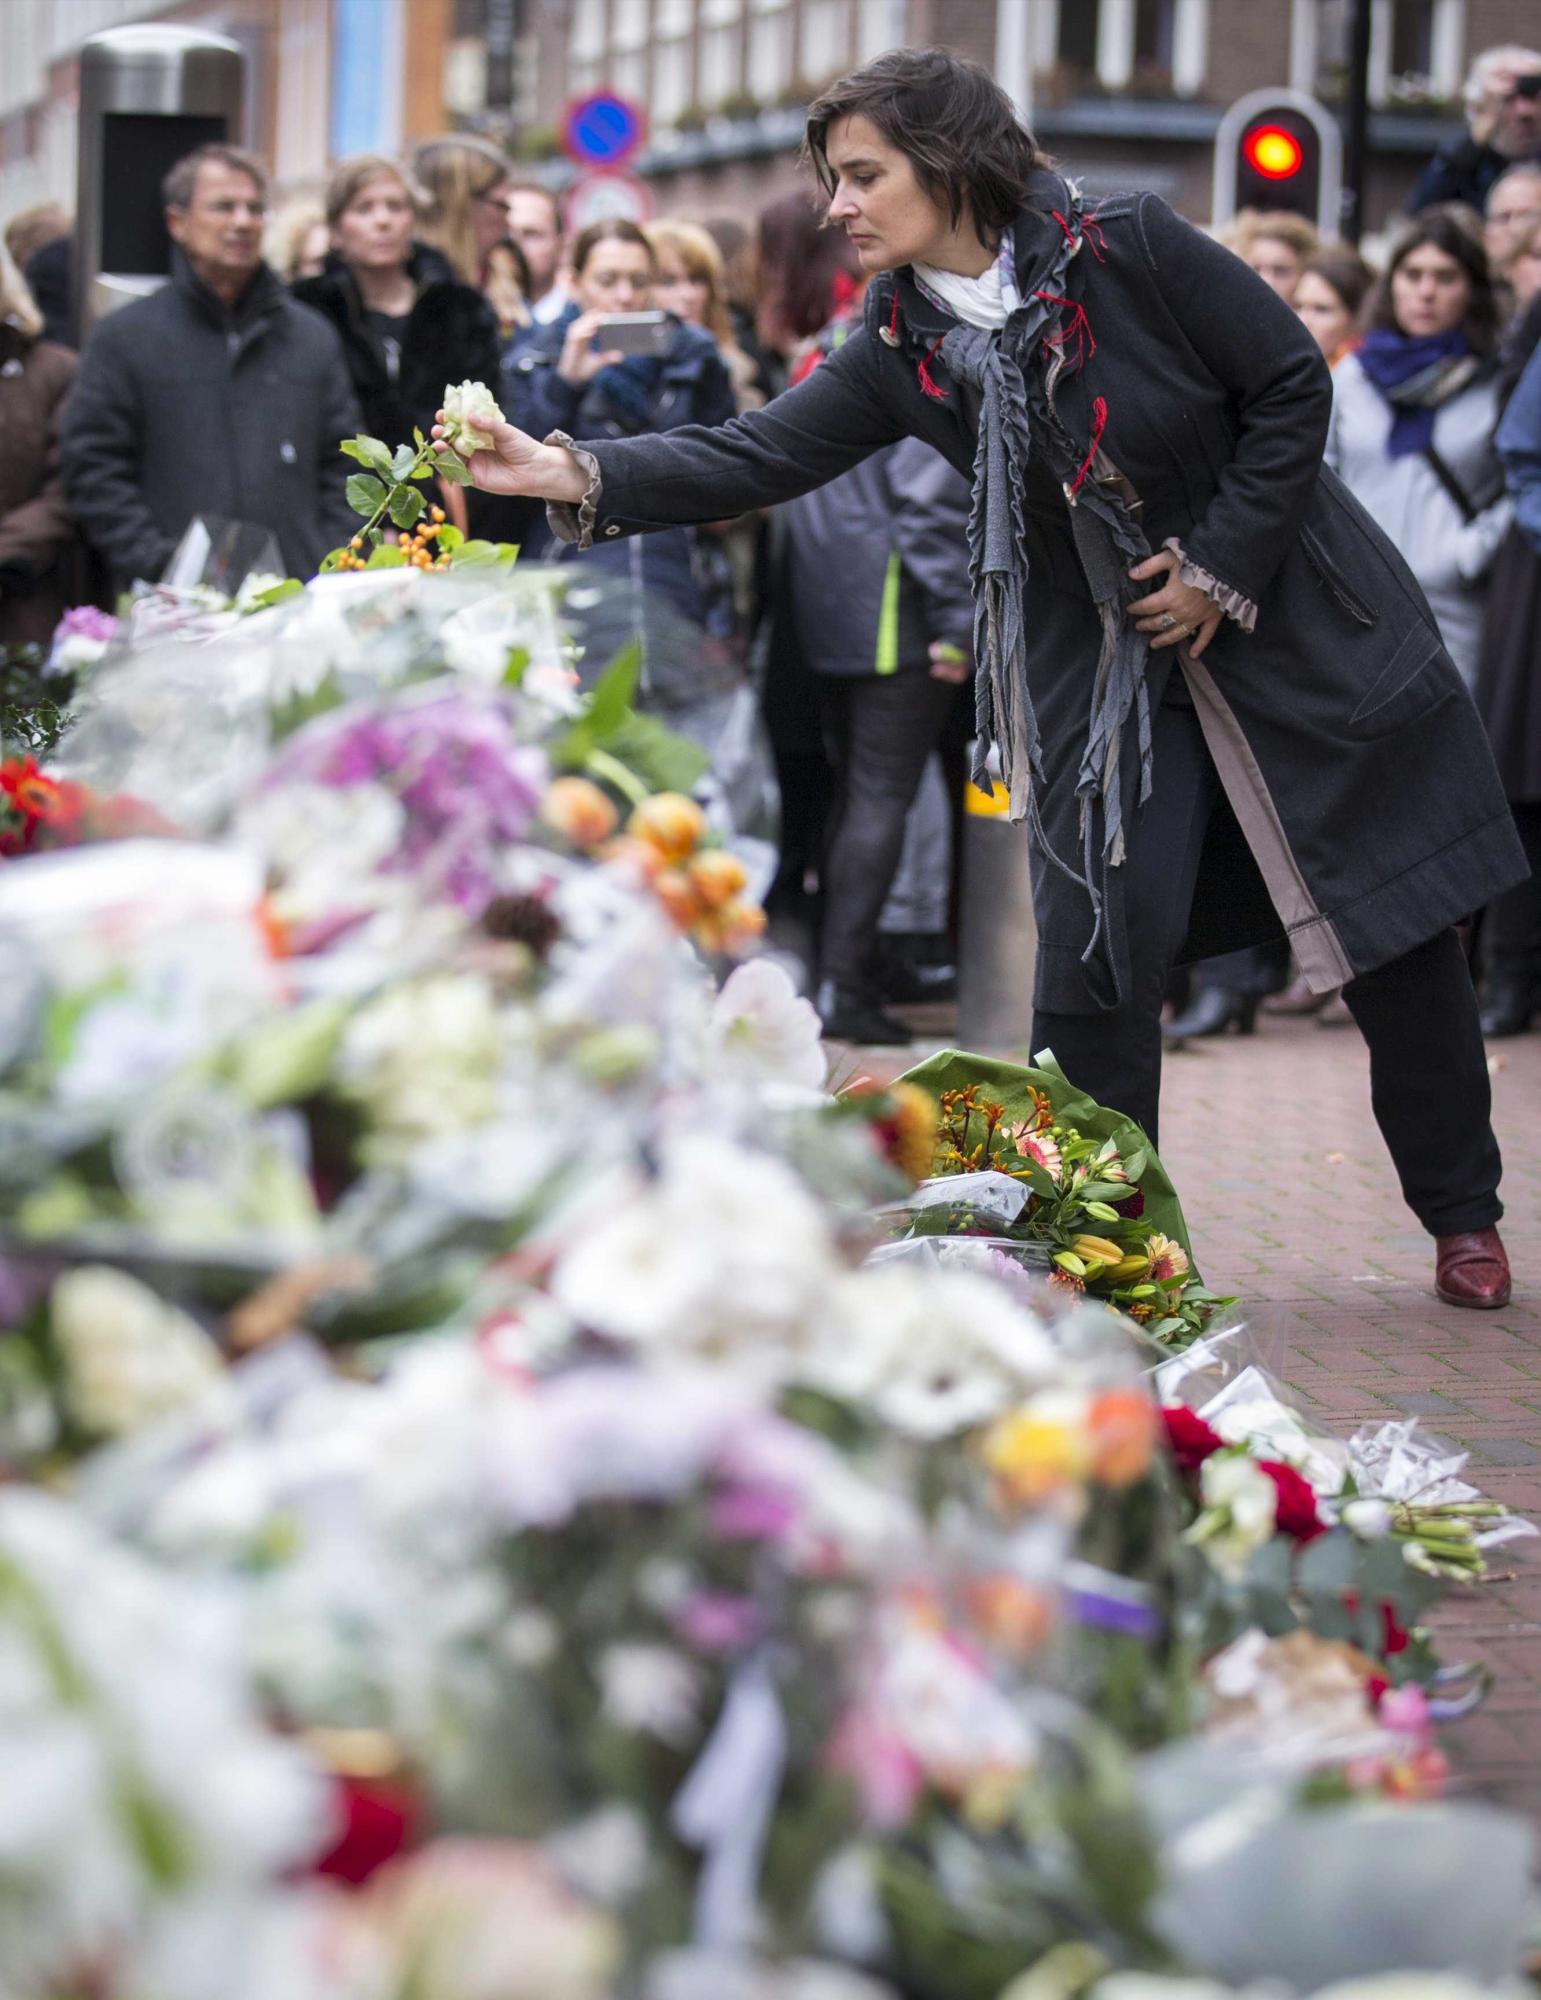 Varias personas depositan flores y muestran sus condolencias en el homenaje a las víctimas de los ataques terroristas de París organizado frente a la embajada francesa en La Haya (Holanda) hoy, 16 de noviembre de 2015. Al menos 129 personas fueron asesinadas el pasado 13 de Noviembre en una serie de ataques terroristas en la ciudad de París. 